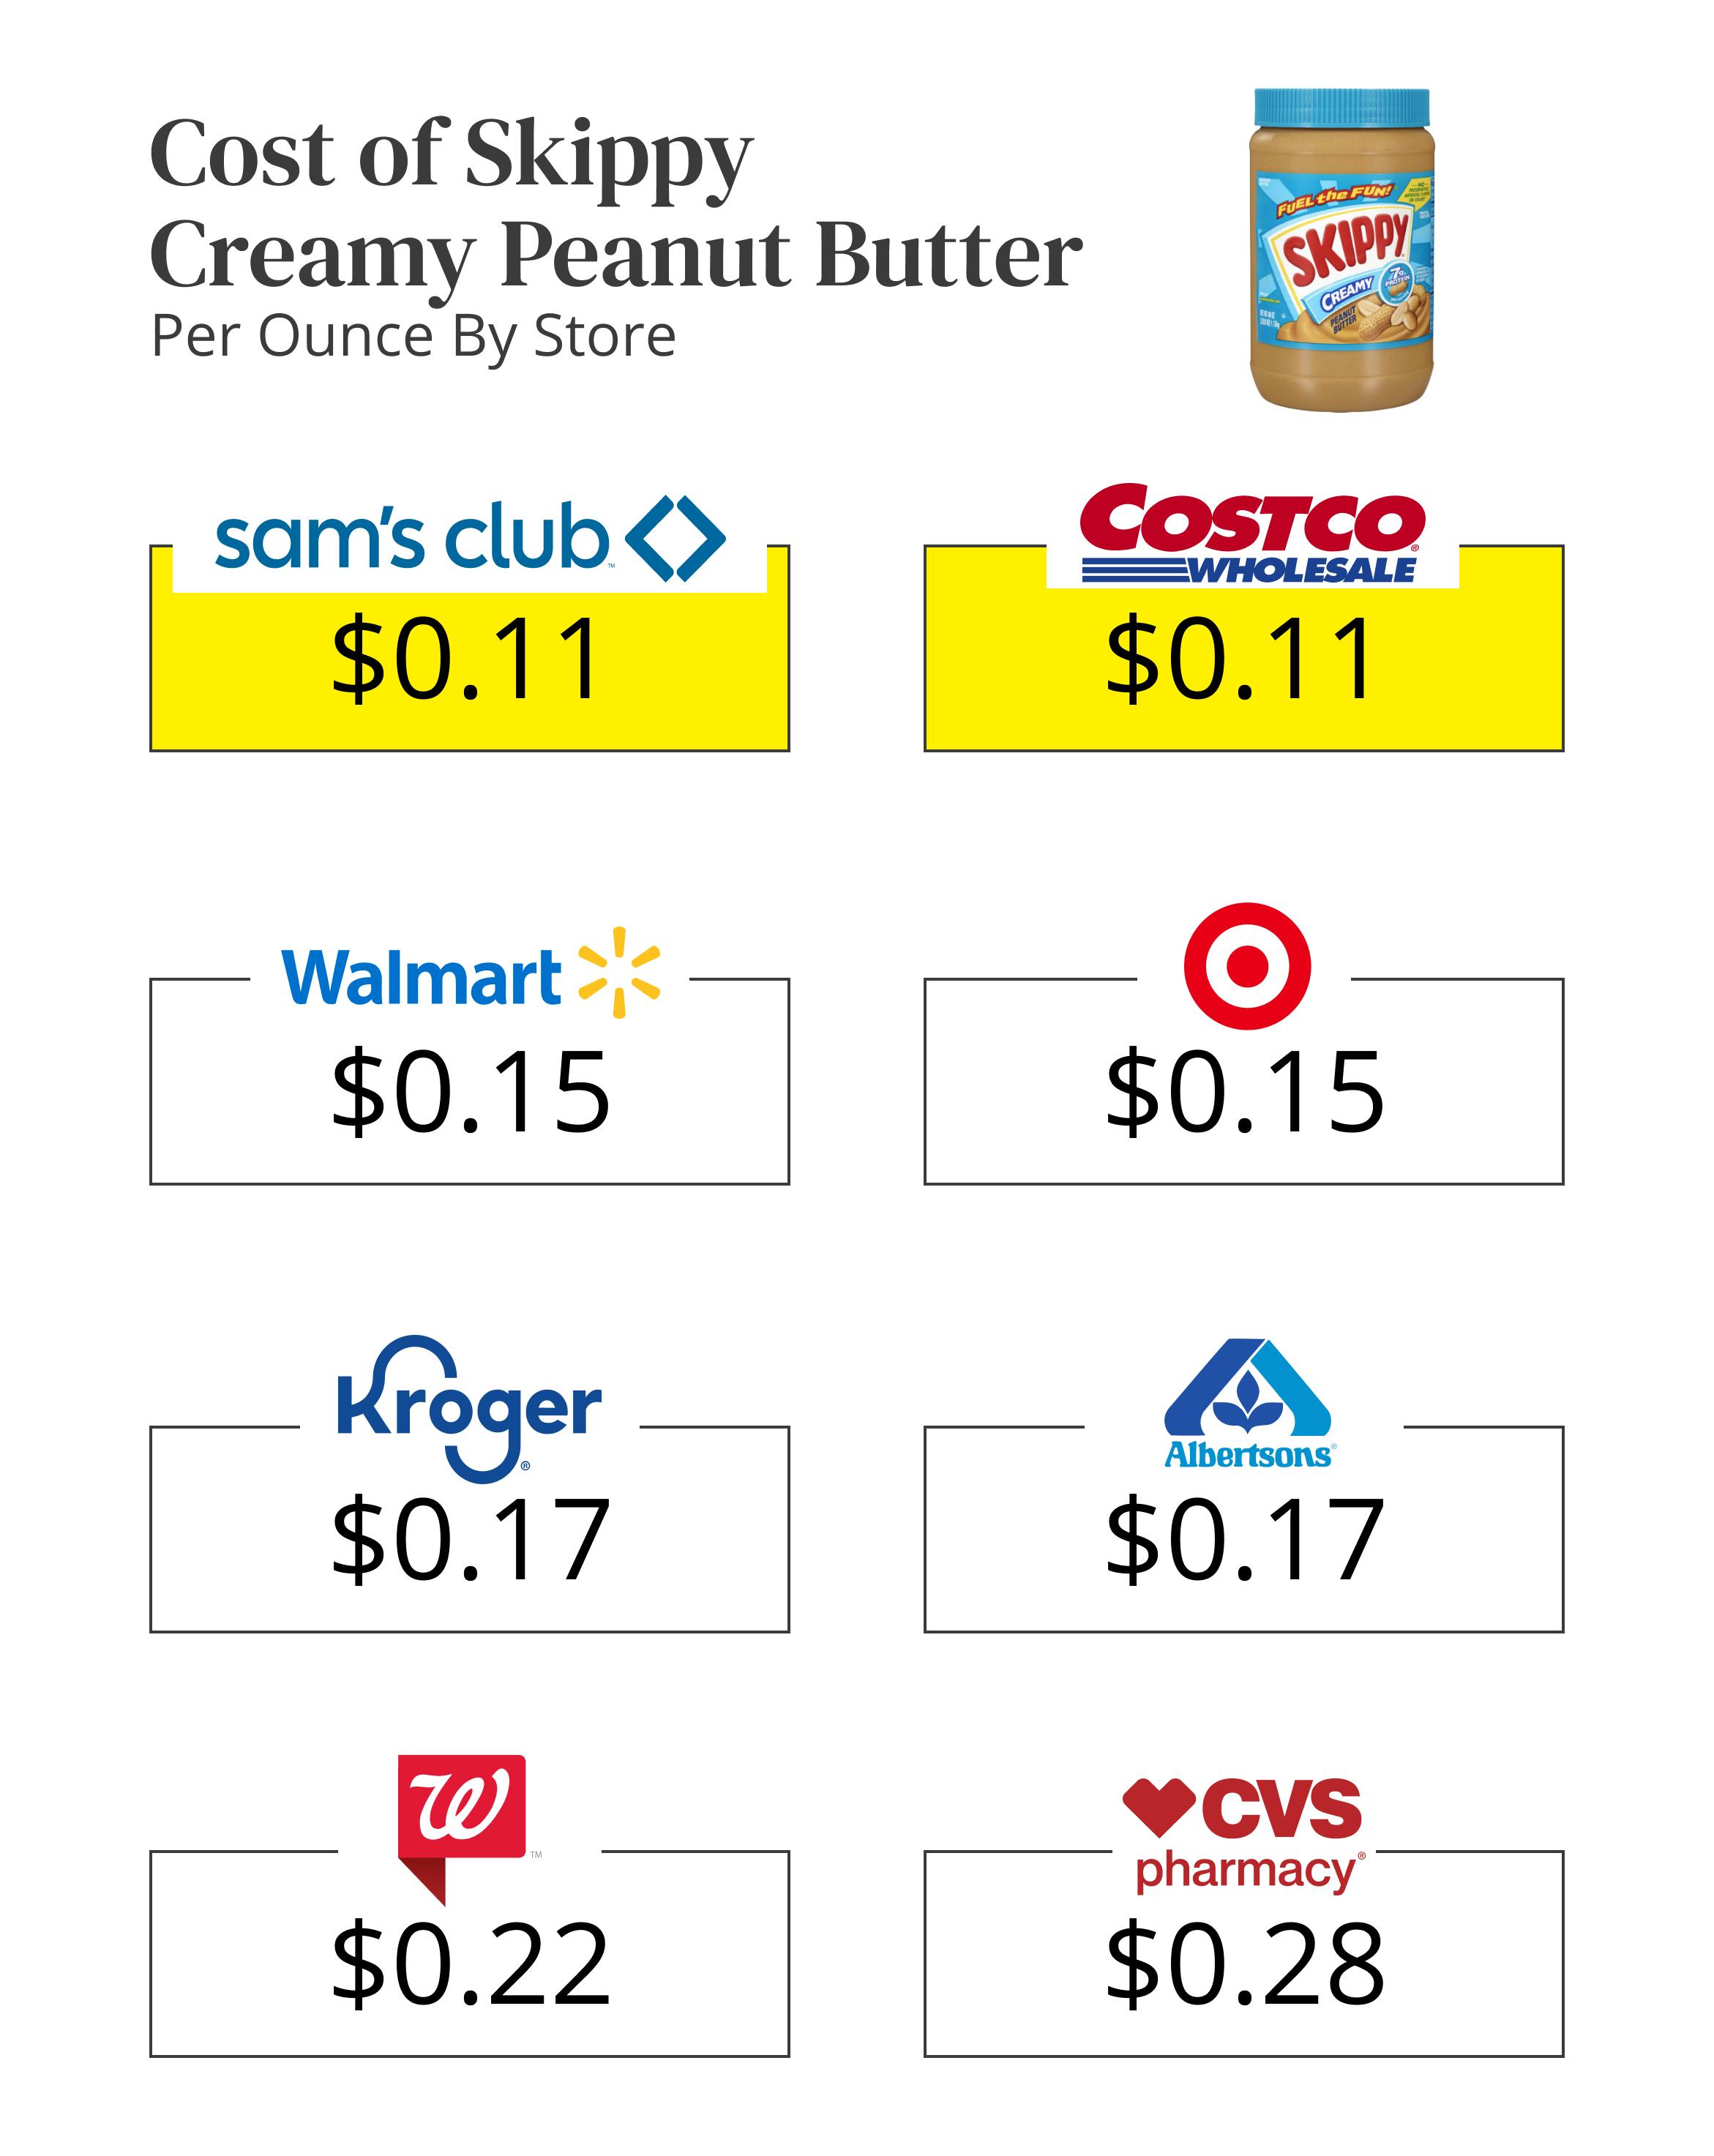 peanut-butter-cost-skippy-cost-comparison